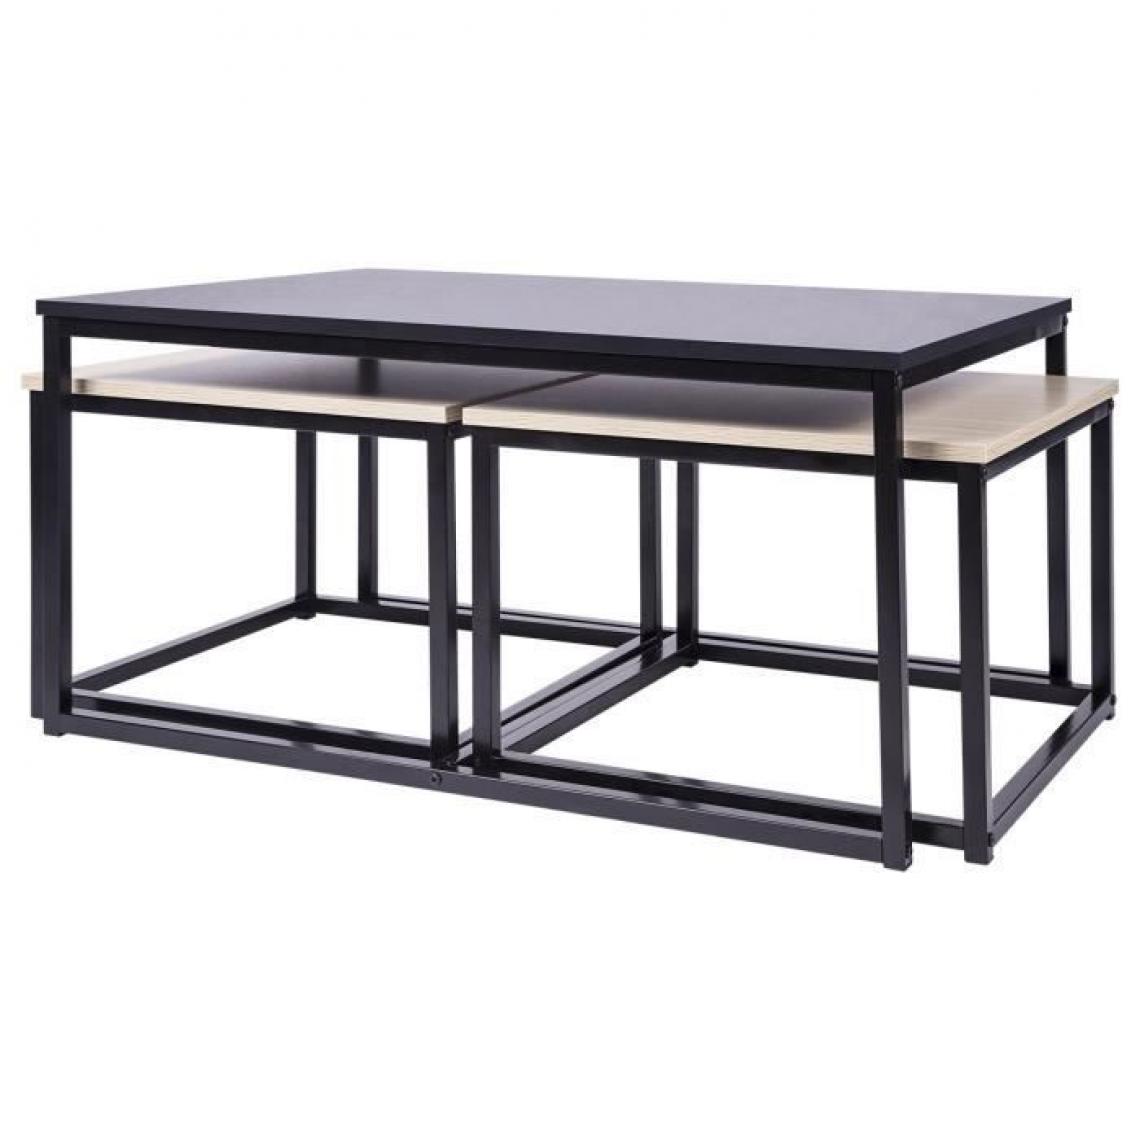 Cstore - Set de 3 Tables gigognes - Imitation bois - L 90 x P 60 x H 43 cm - Tables basses